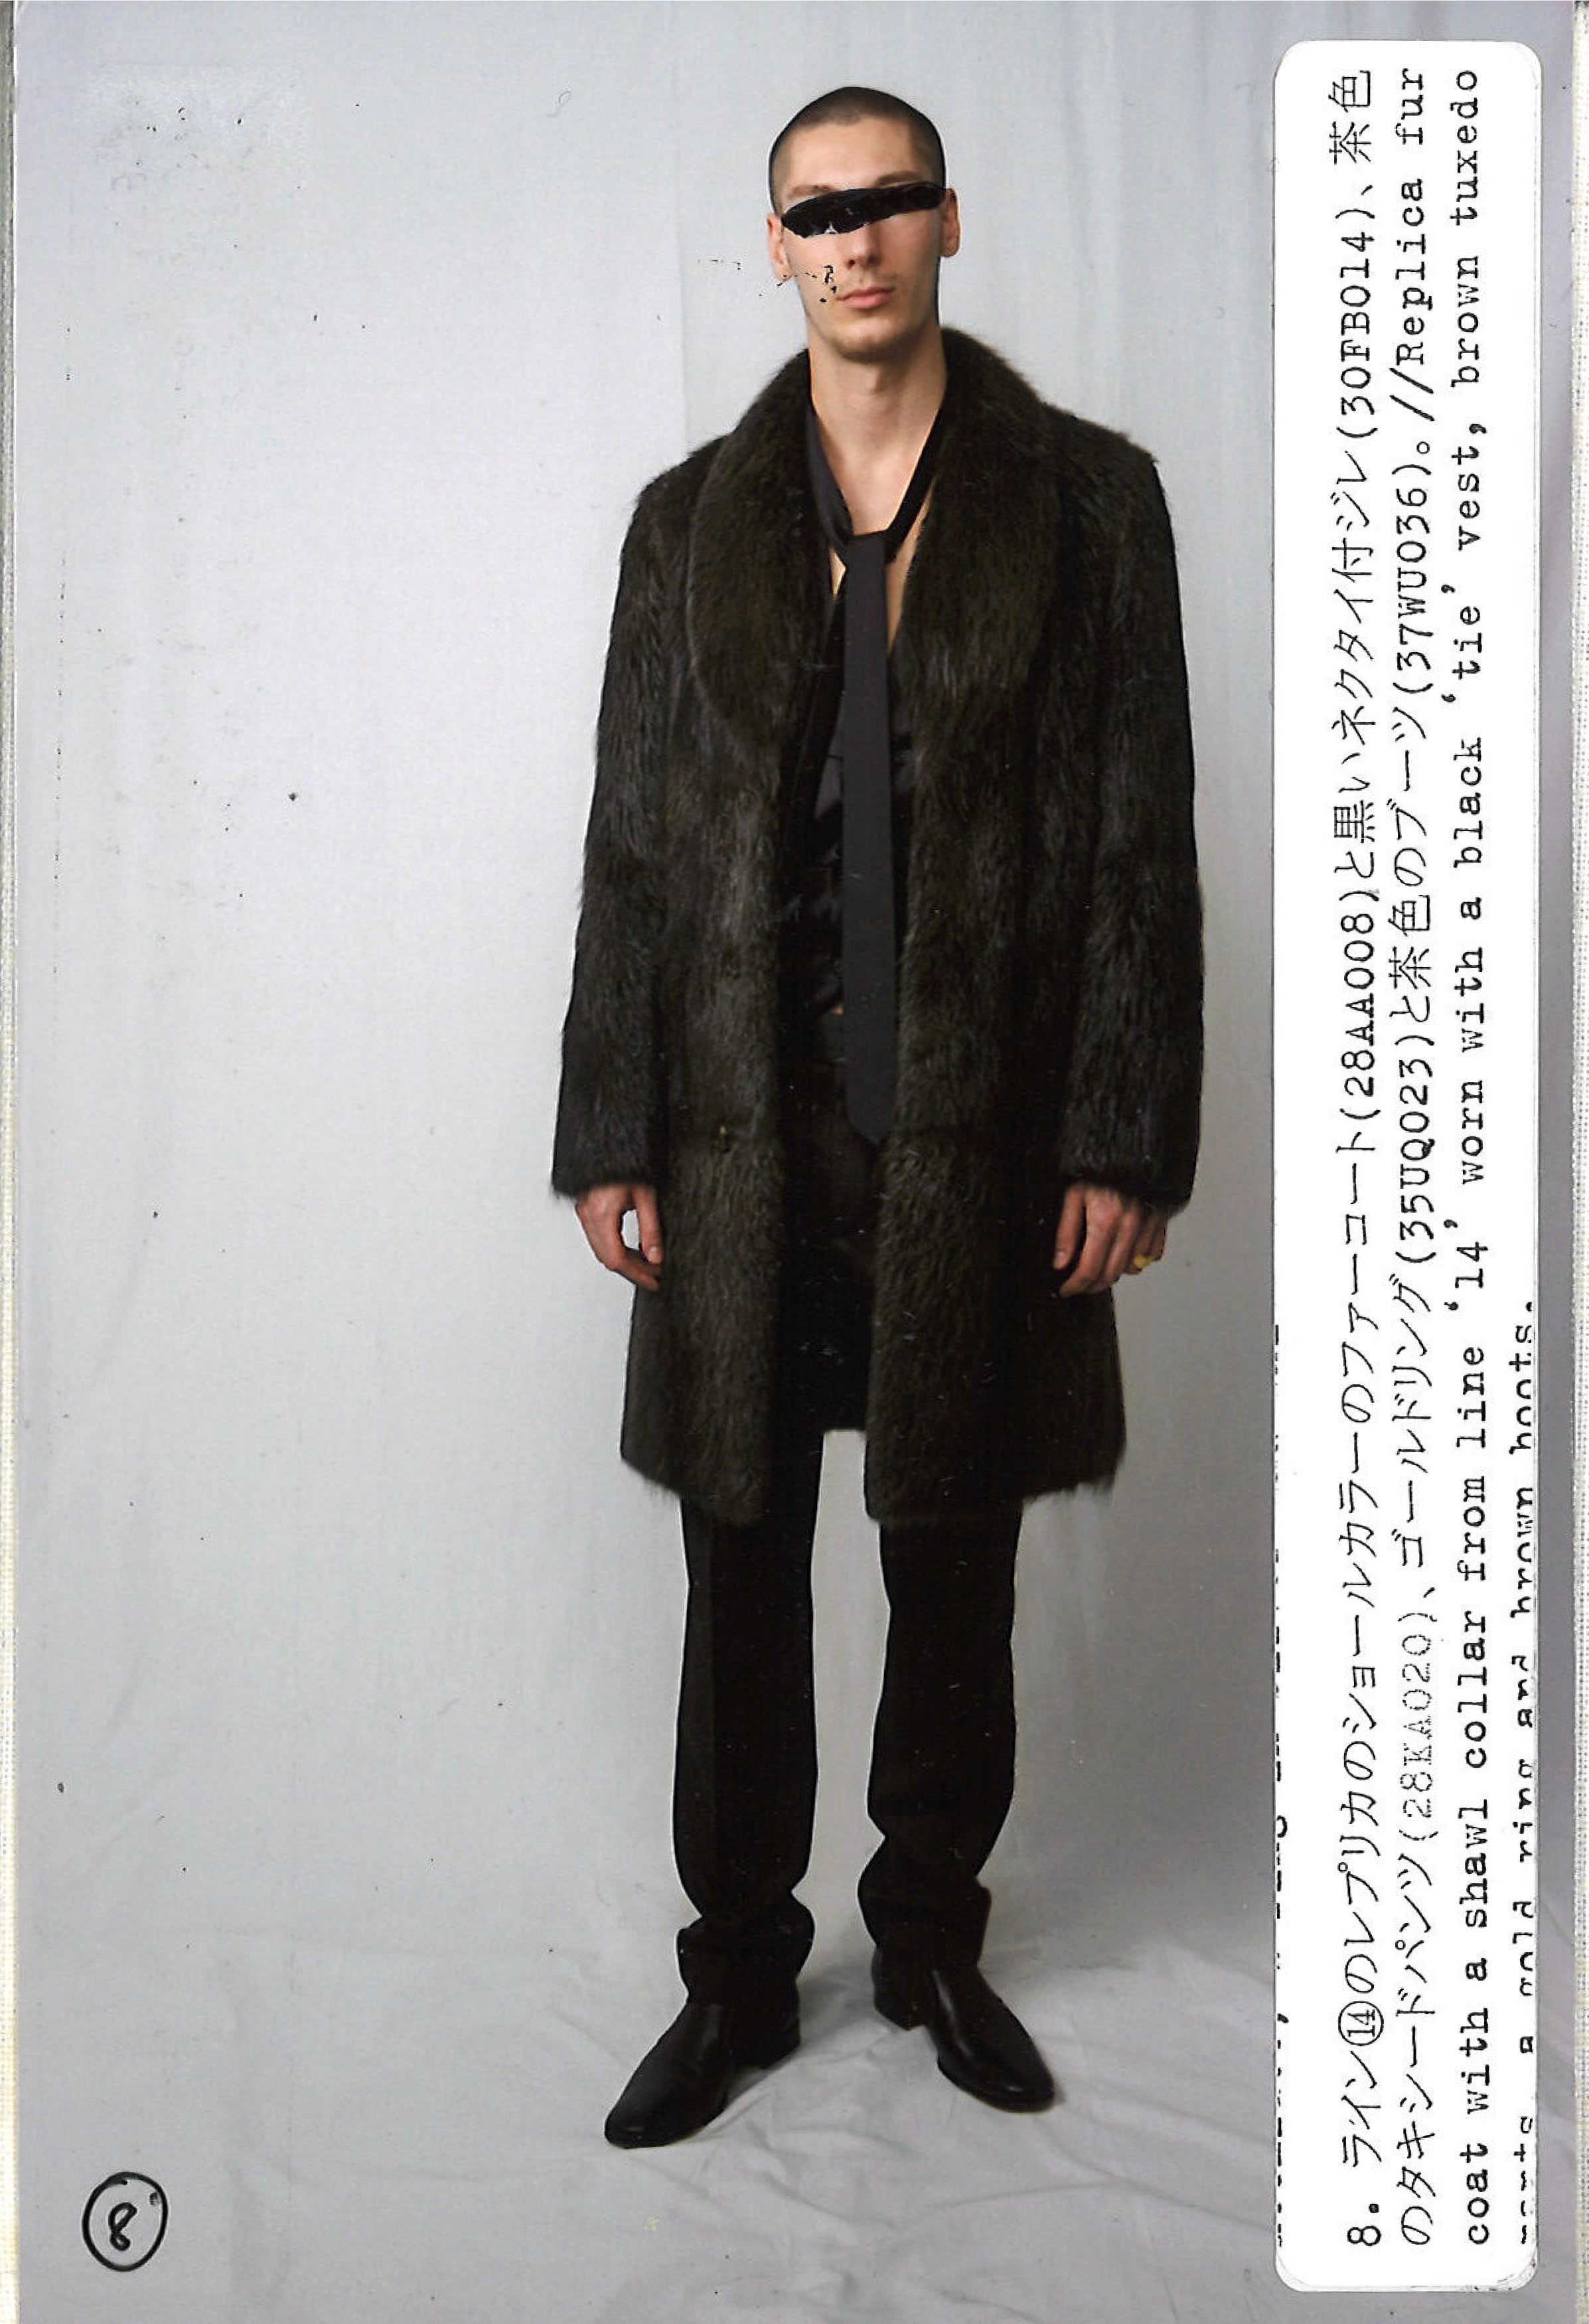 Maison Martin Margiela Lookbook
Menswear Collection Autumn/Winter 2007-08